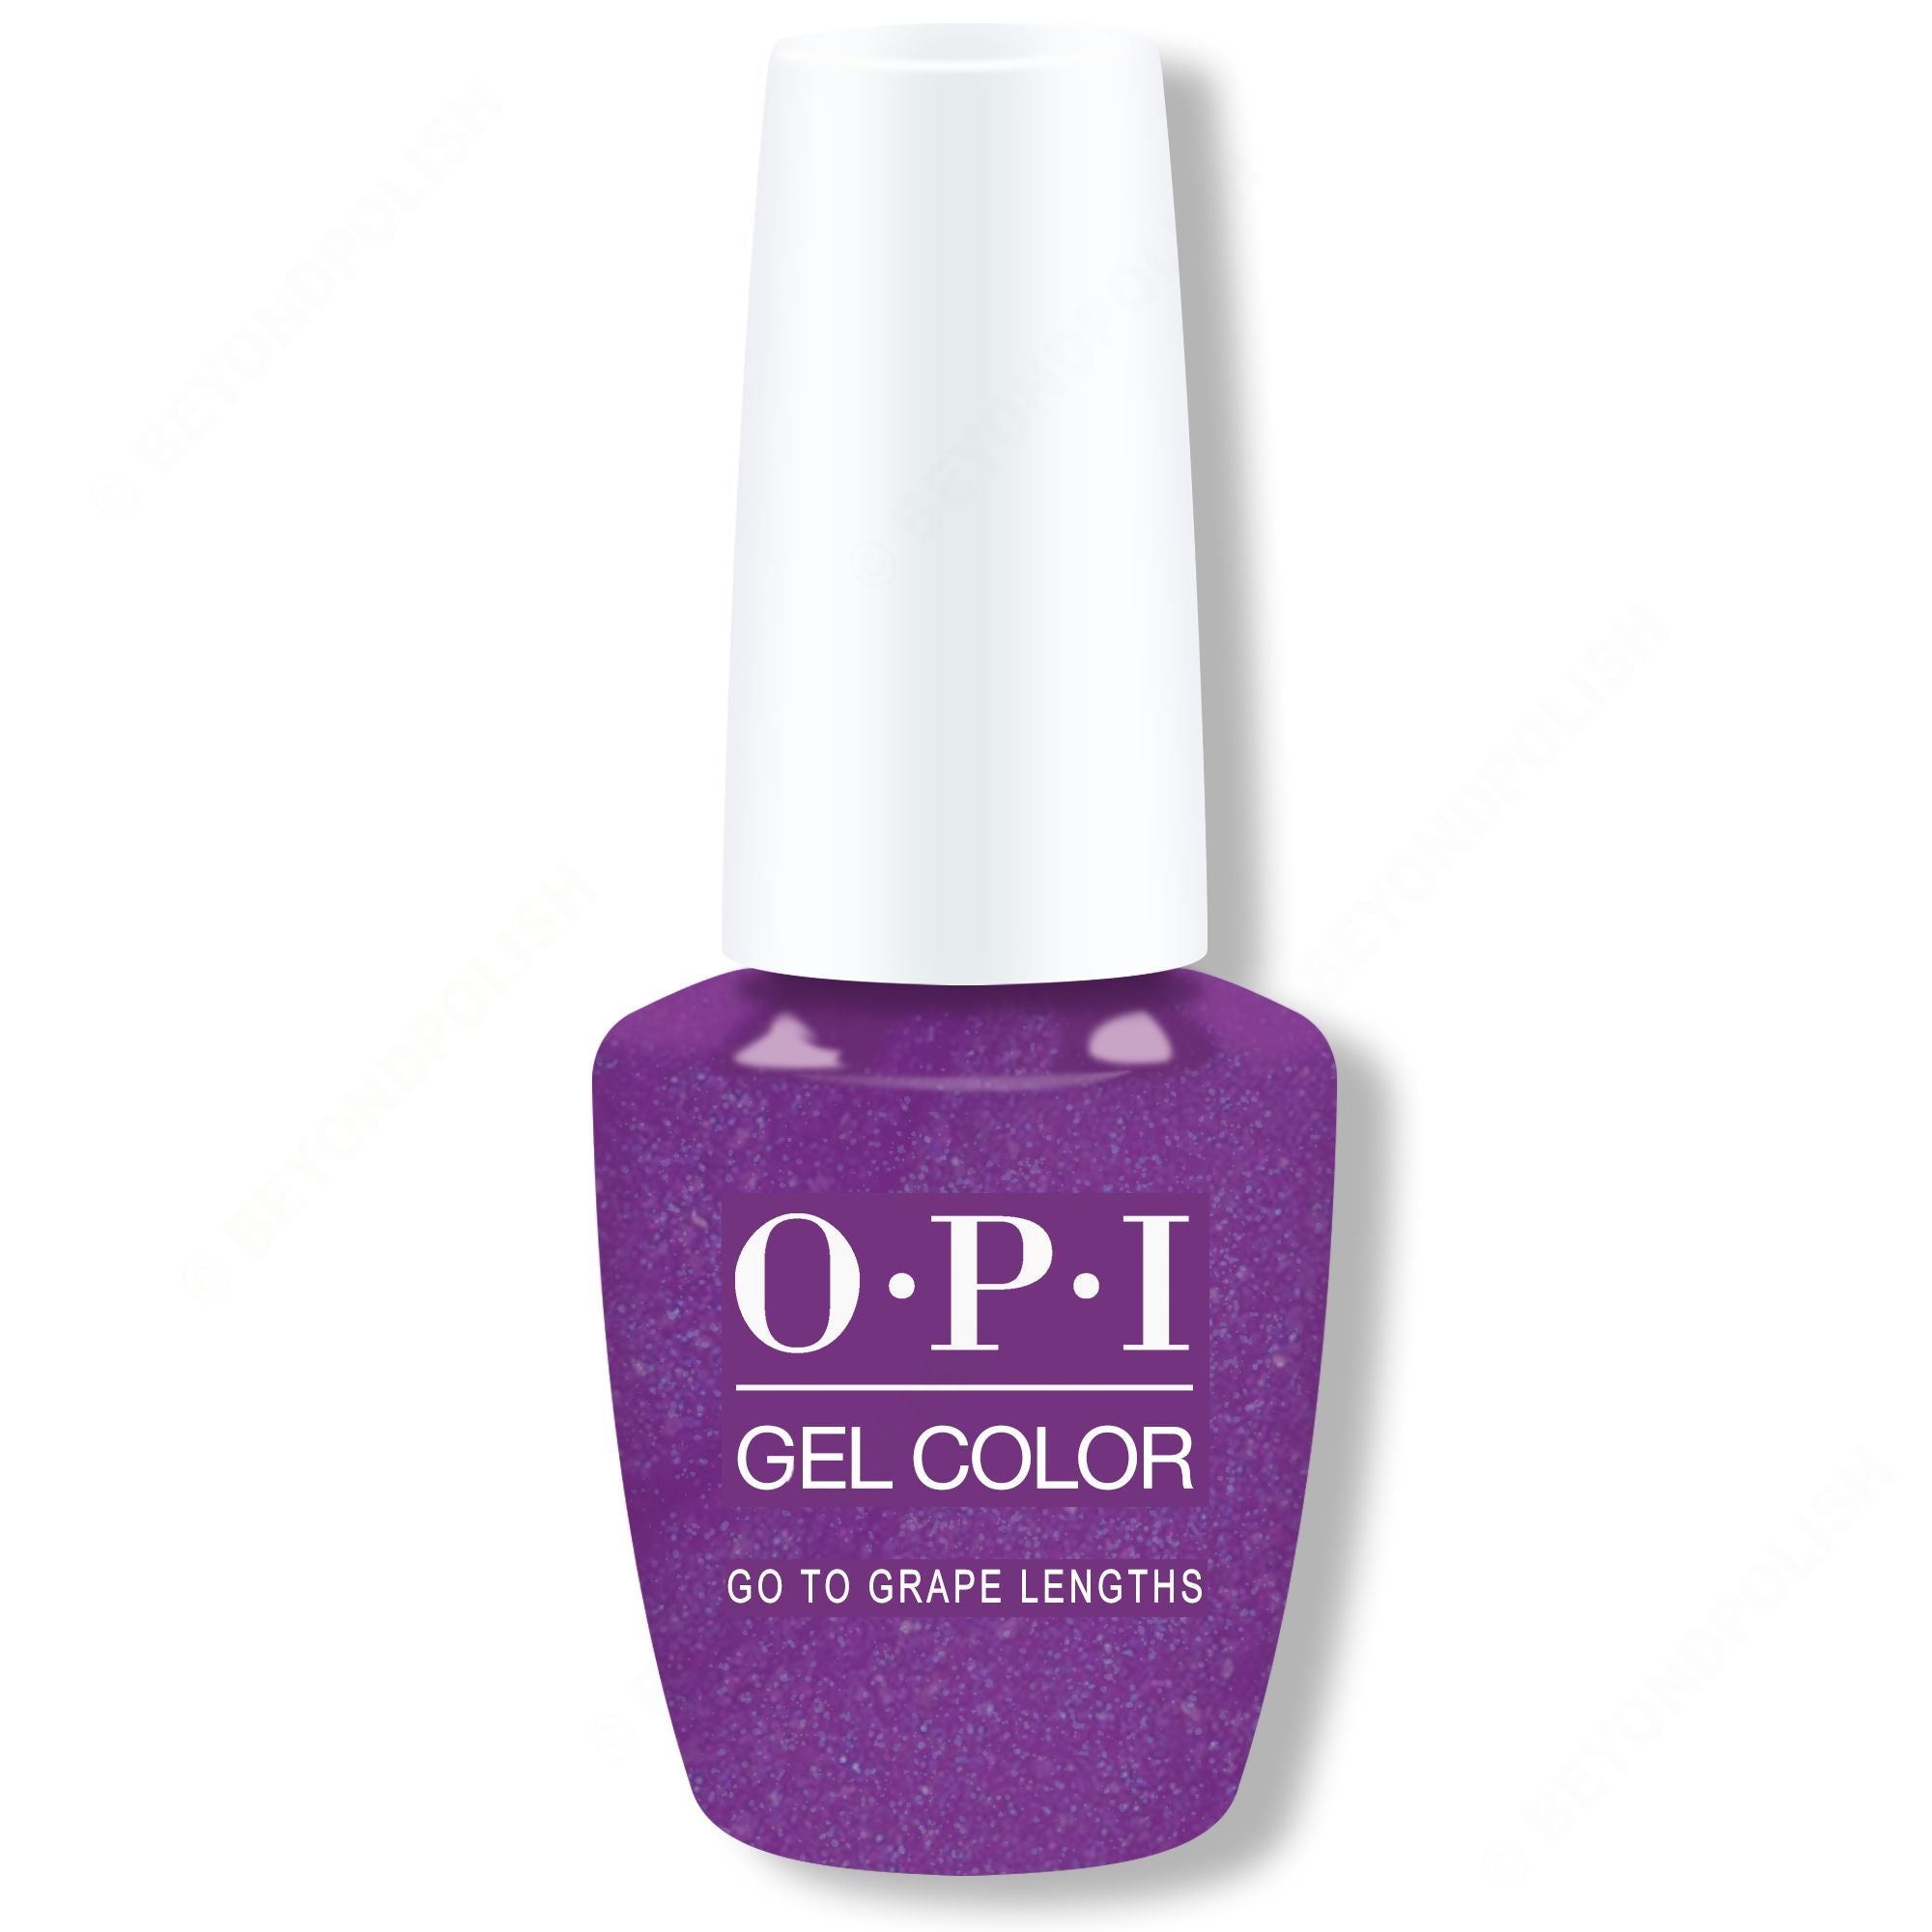 OPI Gel Color - Go to Grape Lengths 0.5 oz - #GCB005